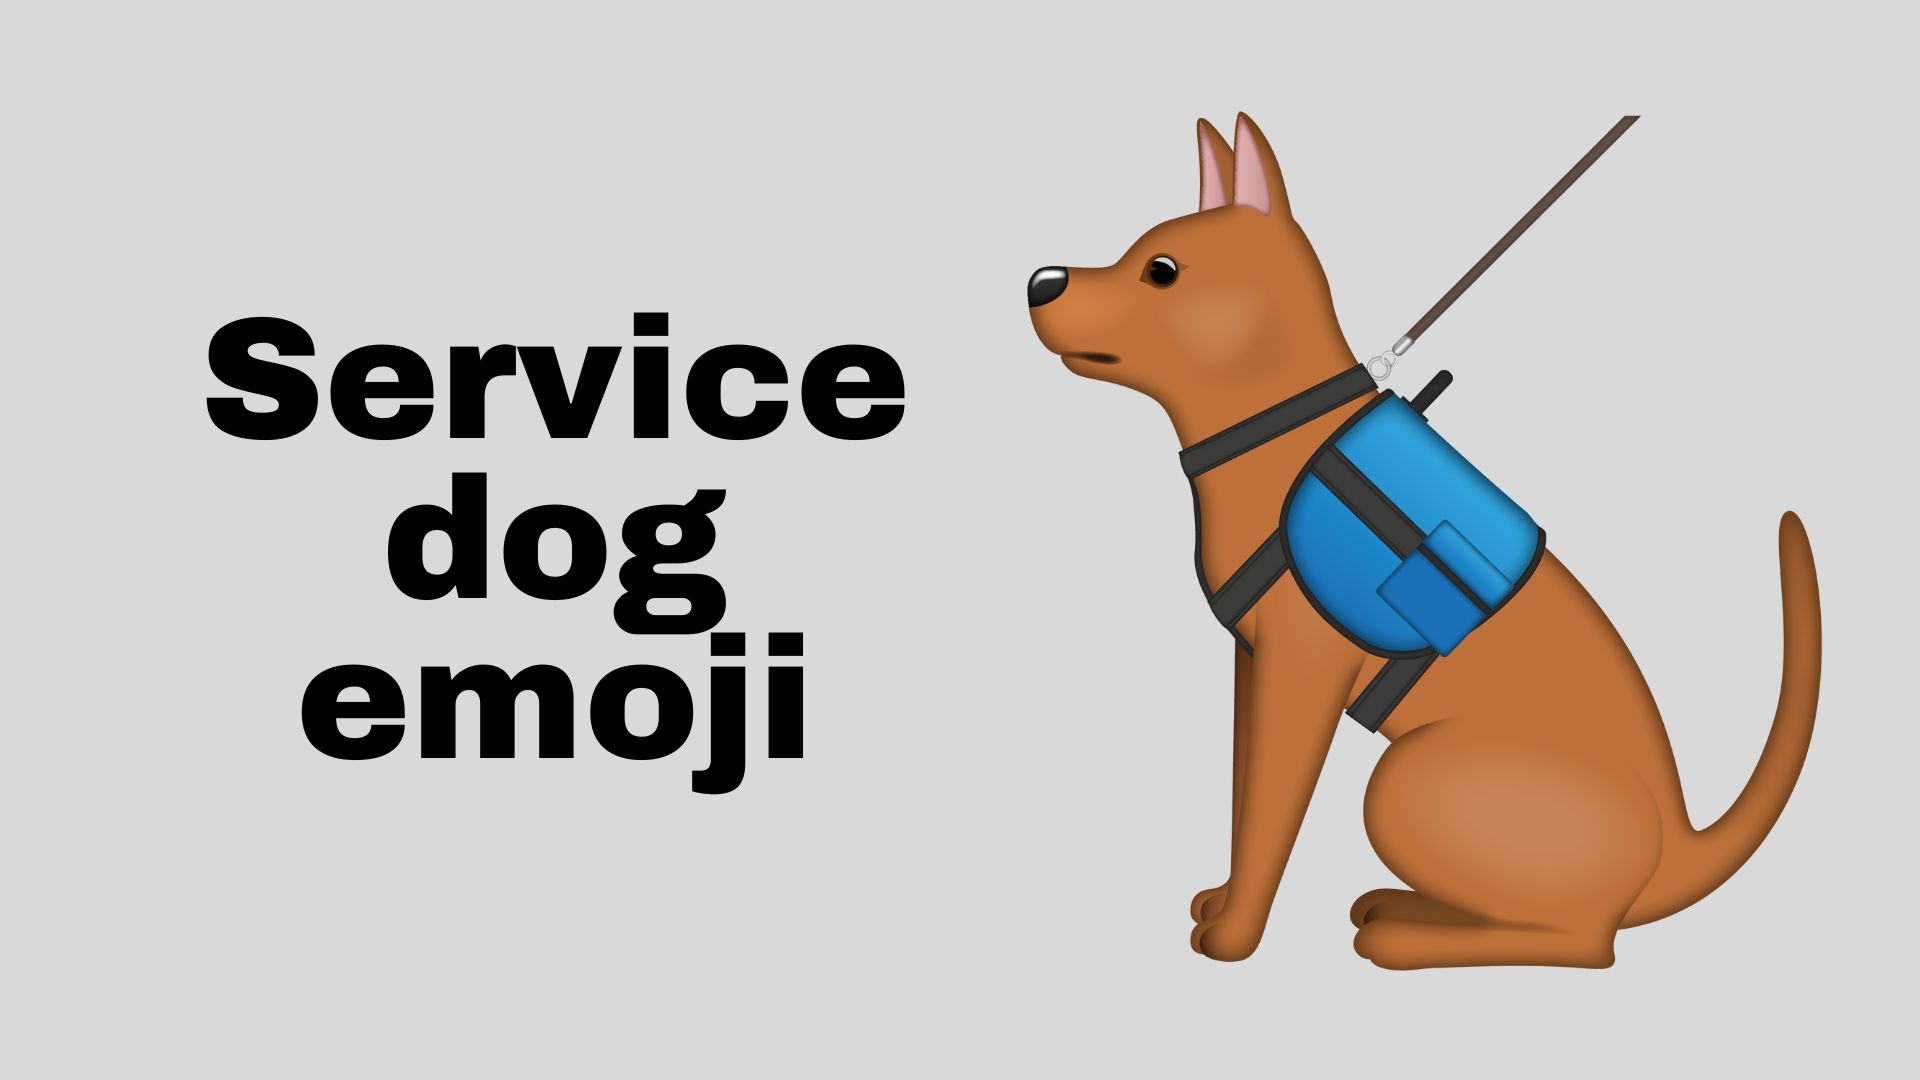 Service dog emoji